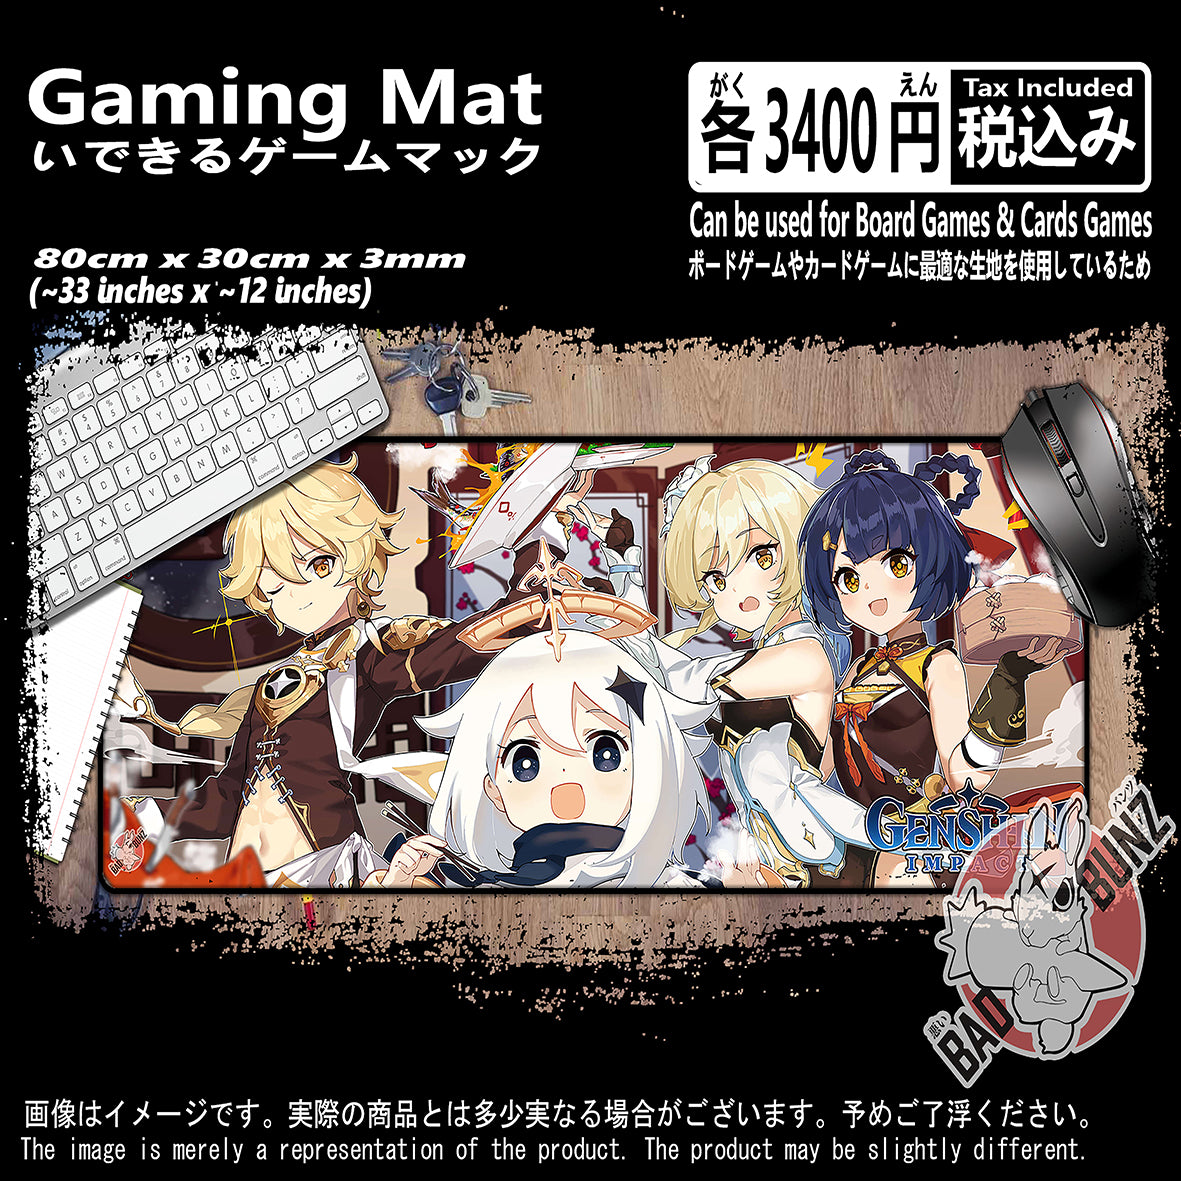 (GM-GSN-04) Genshin Impact Video Games 800mm x 300mm Gaming Play Mat